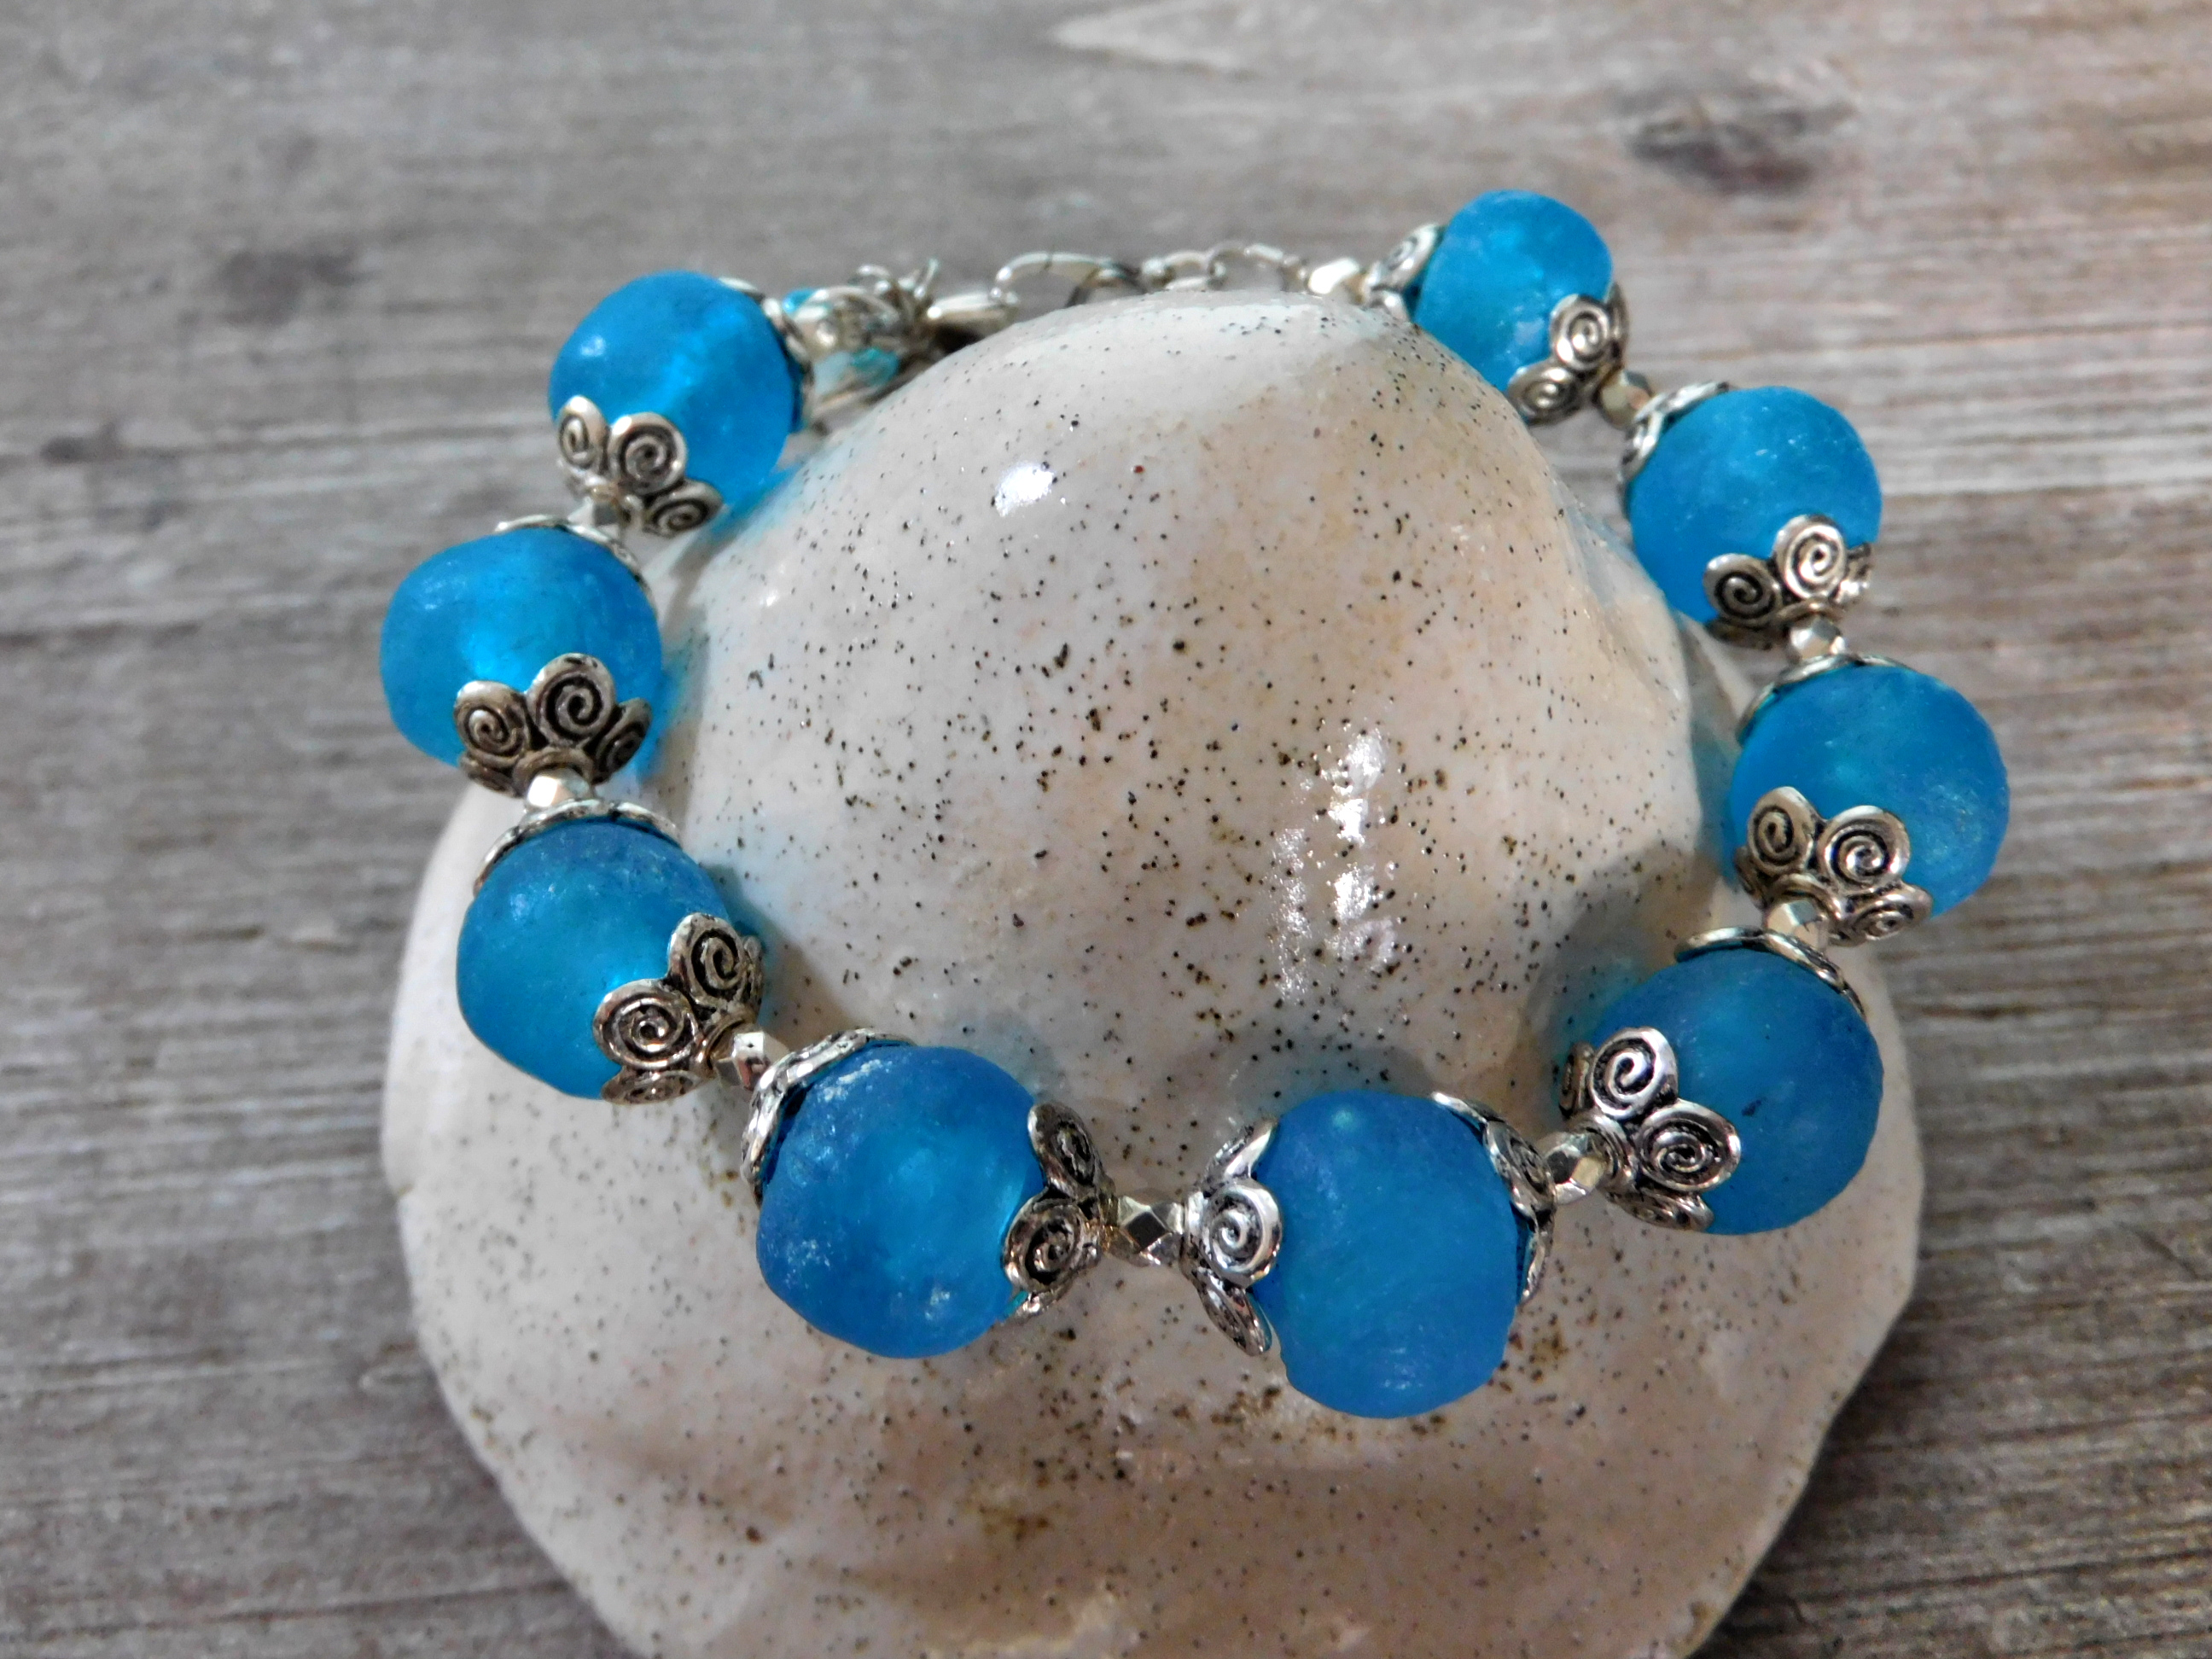 Armband aus afrikanischen Krobo Recyclingglas Perlen - türkis-blau,silber - 21 cm